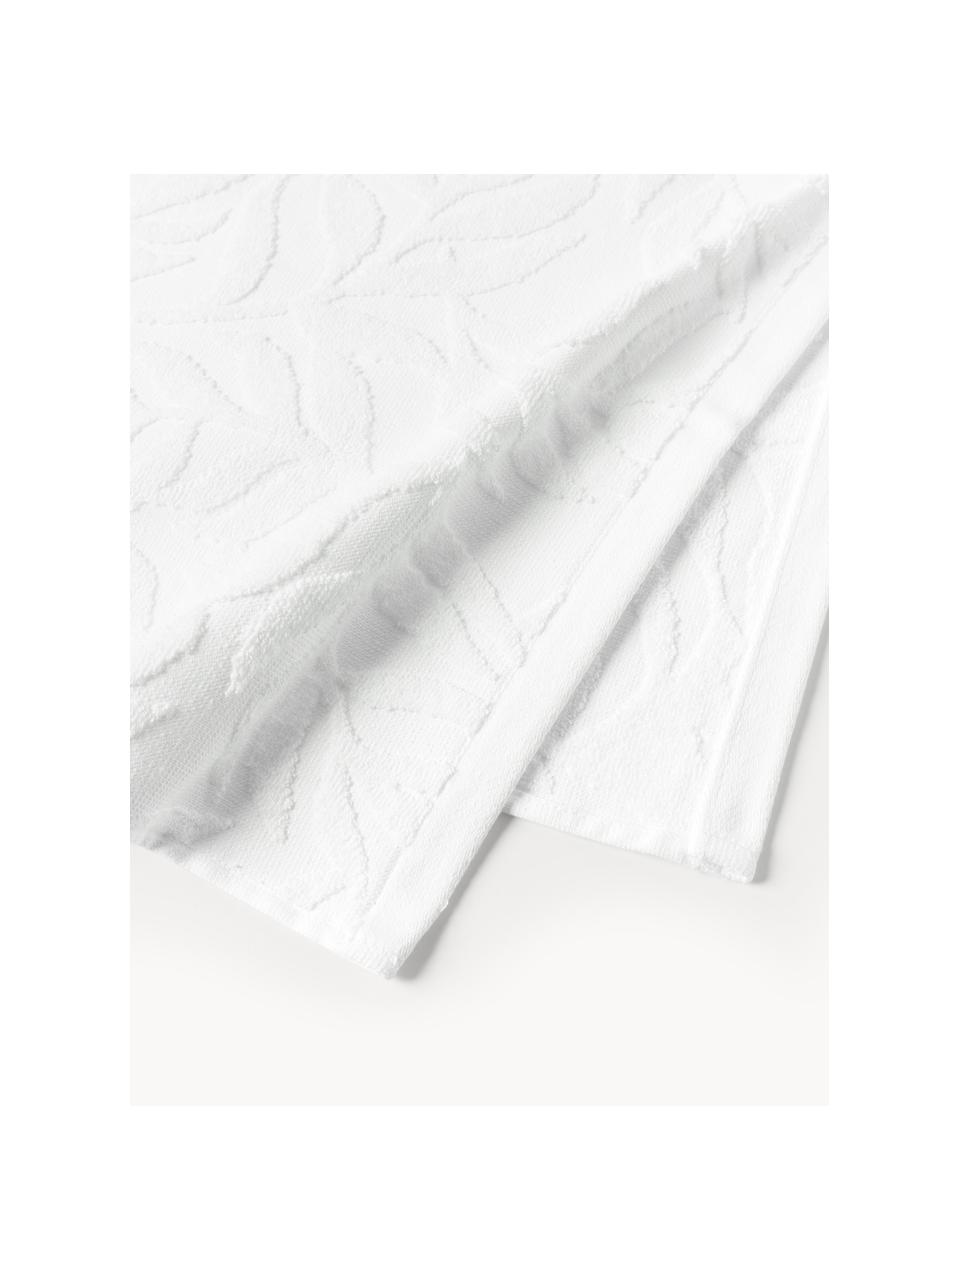 Lot de serviettes de bain en coton Leaf, set de tailles variées, Blanc, 3 éléments (1 serviette invité, 1 serviette de toilette et 1 drap de bain)